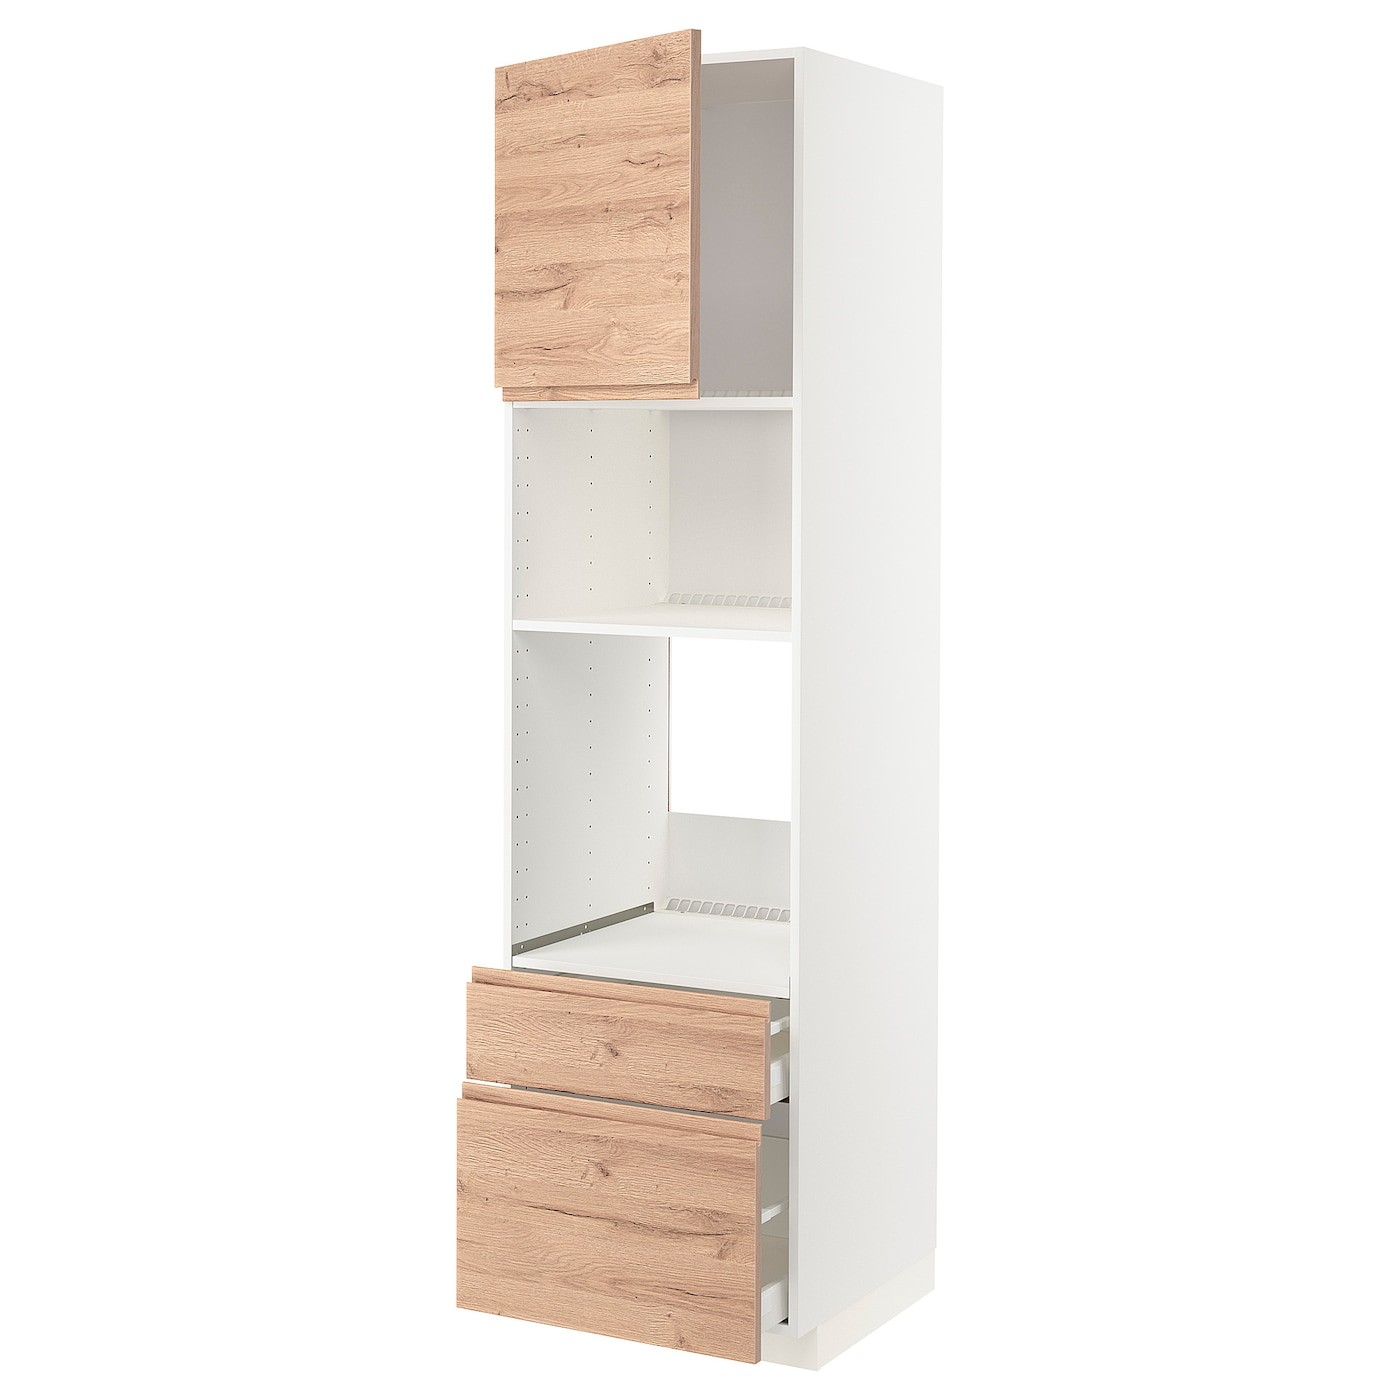 IKEA METOD МЕТОД / MAXIMERA МАКСИМЕРА Высокий шкаф для духовки / микроволновки с дверями / 2 ящиками, белый / Voxtorp имитация дуб, 60x60x220 см 89464082 | 894.640.82